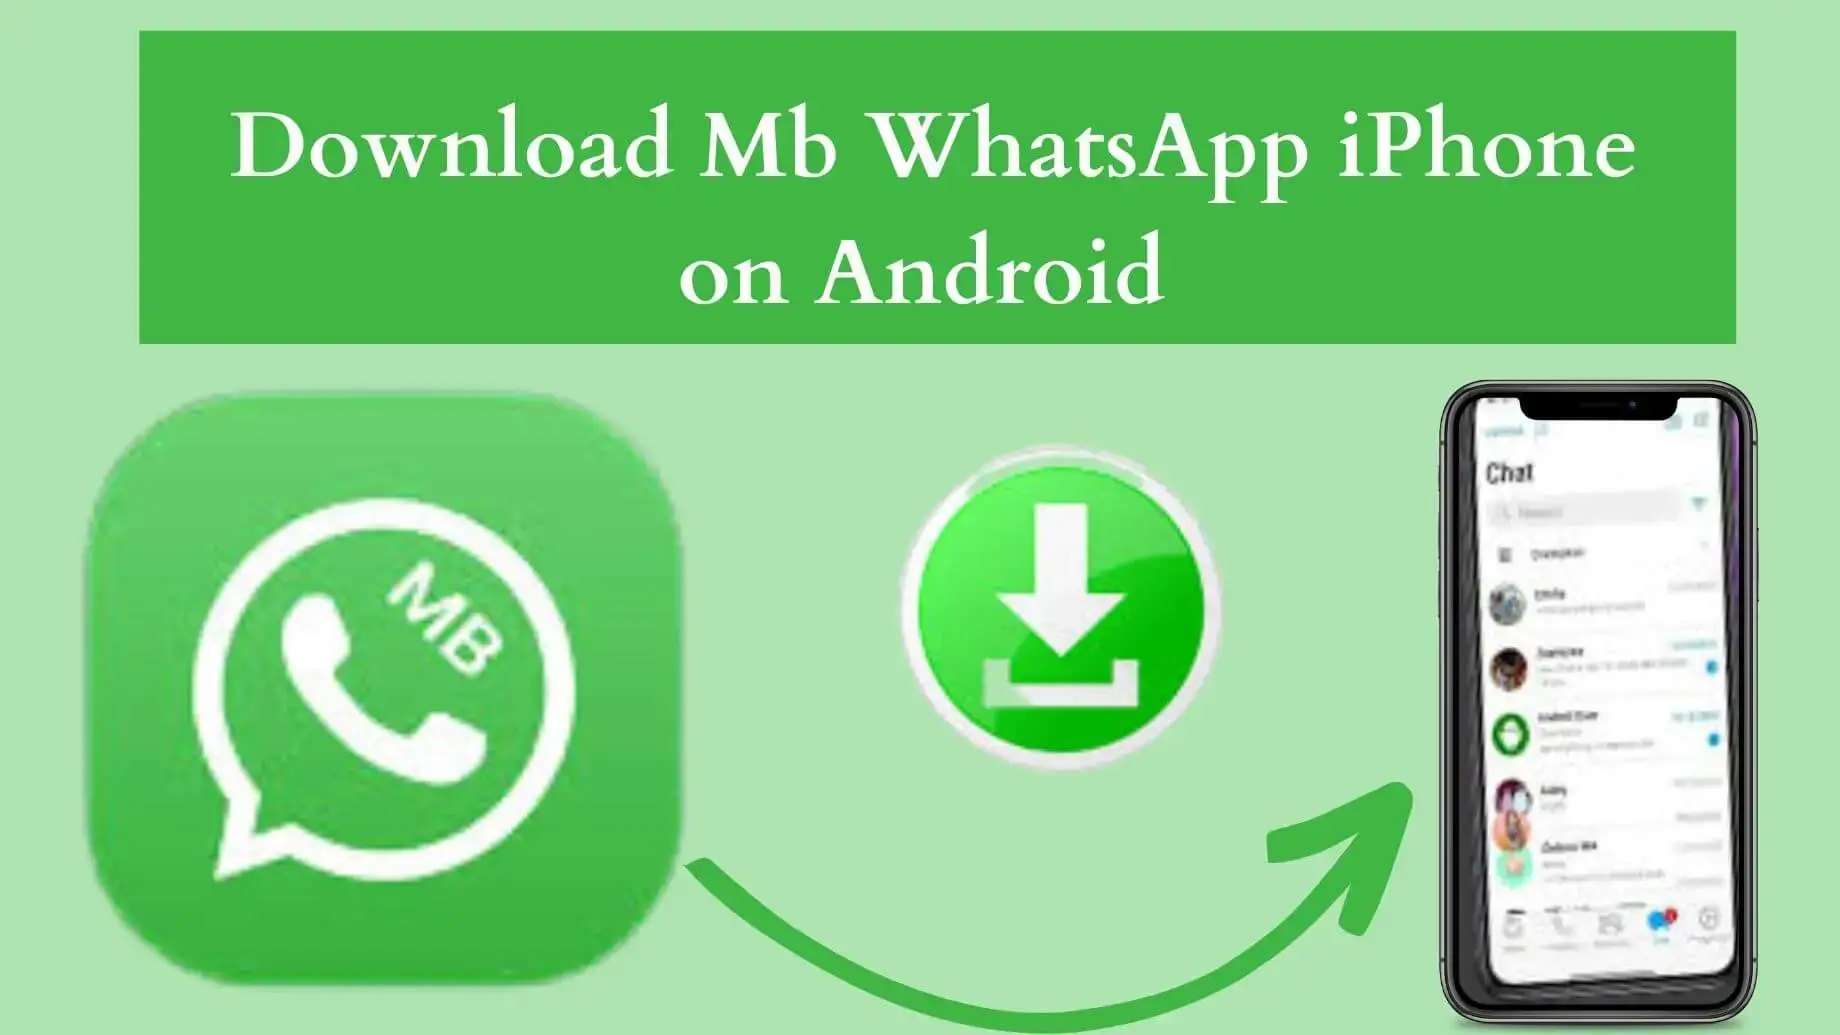 Mb WhatsApp iPhone